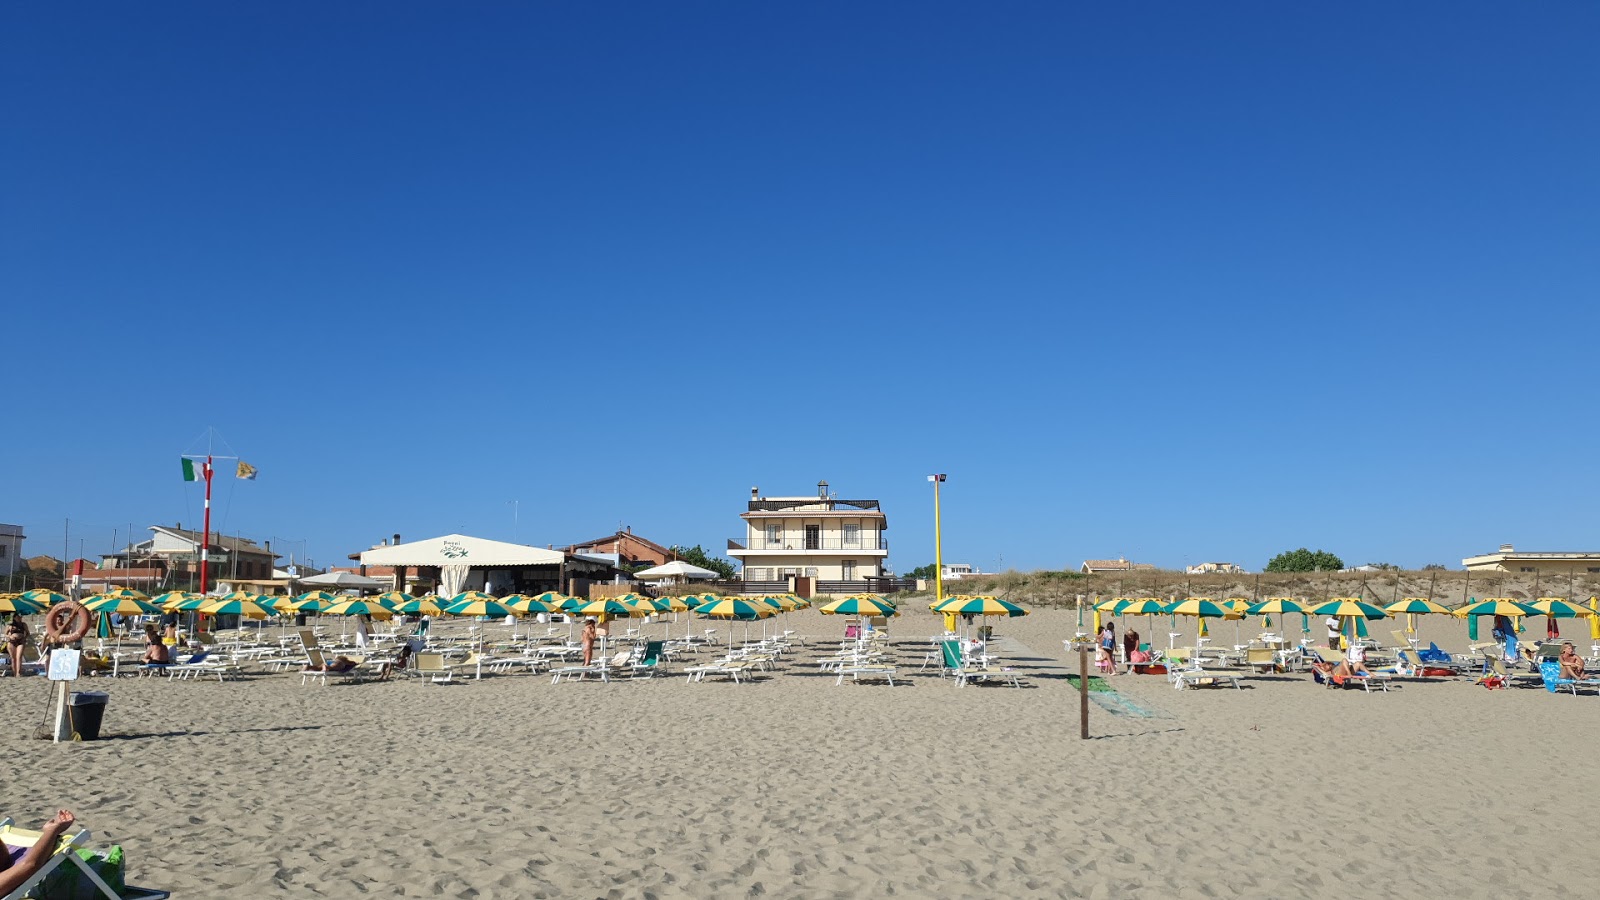 Lungomare Marina di Ardea Beach的照片 - 受到放松专家欢迎的热门地点